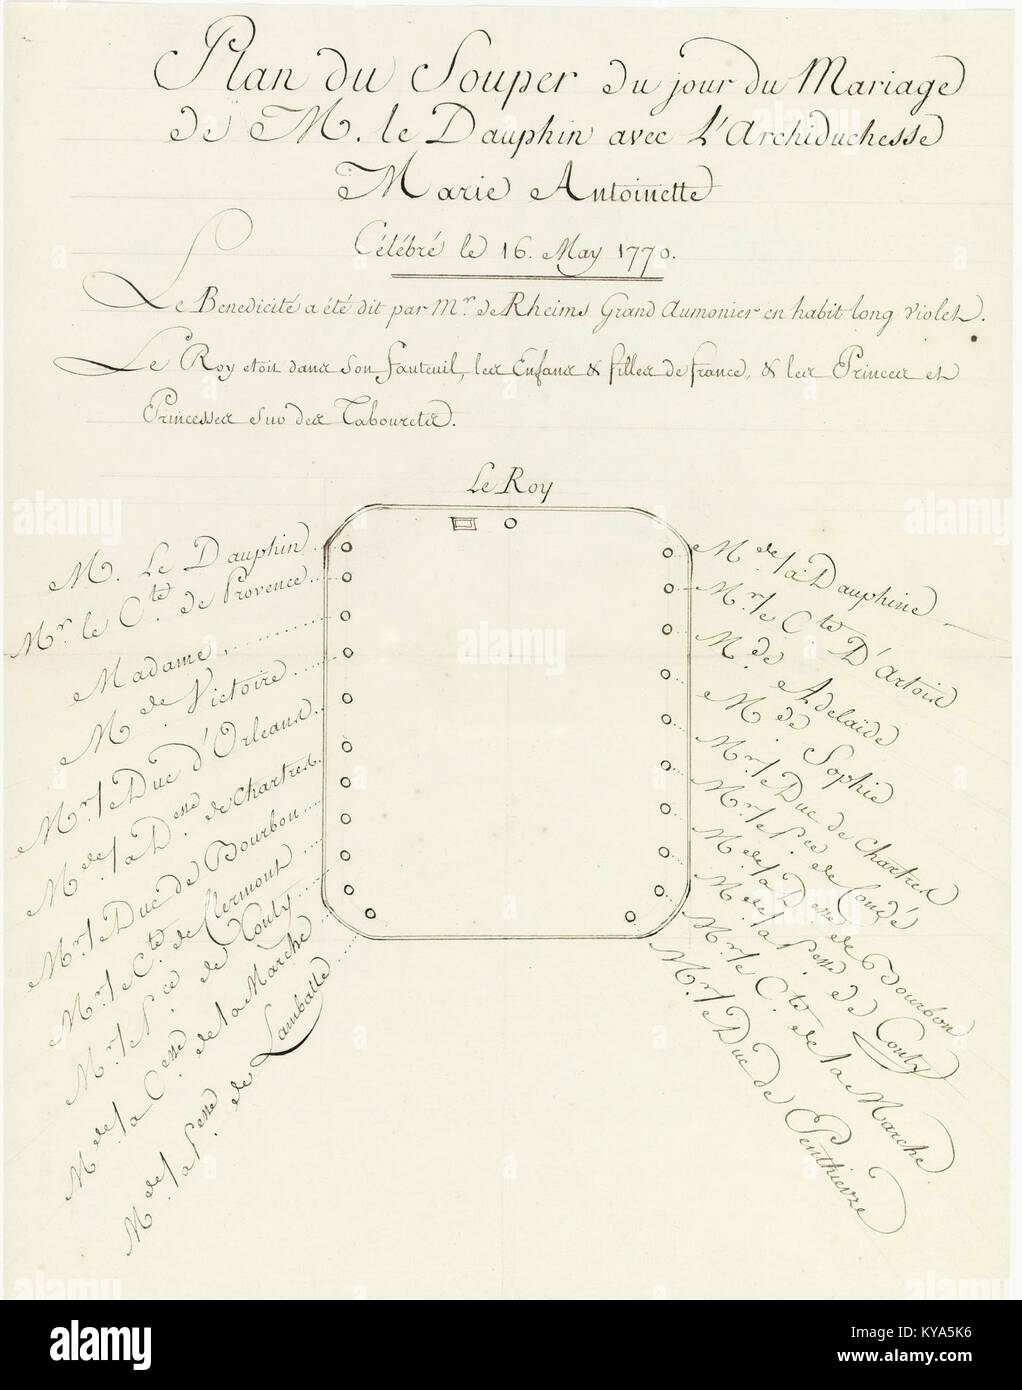 Plan du souper du mariage de M. le Dauphin avec l'Archiduchesse Marie-Antoinette 1 - Archives nationales - K-147-14-2 Banque D'Images